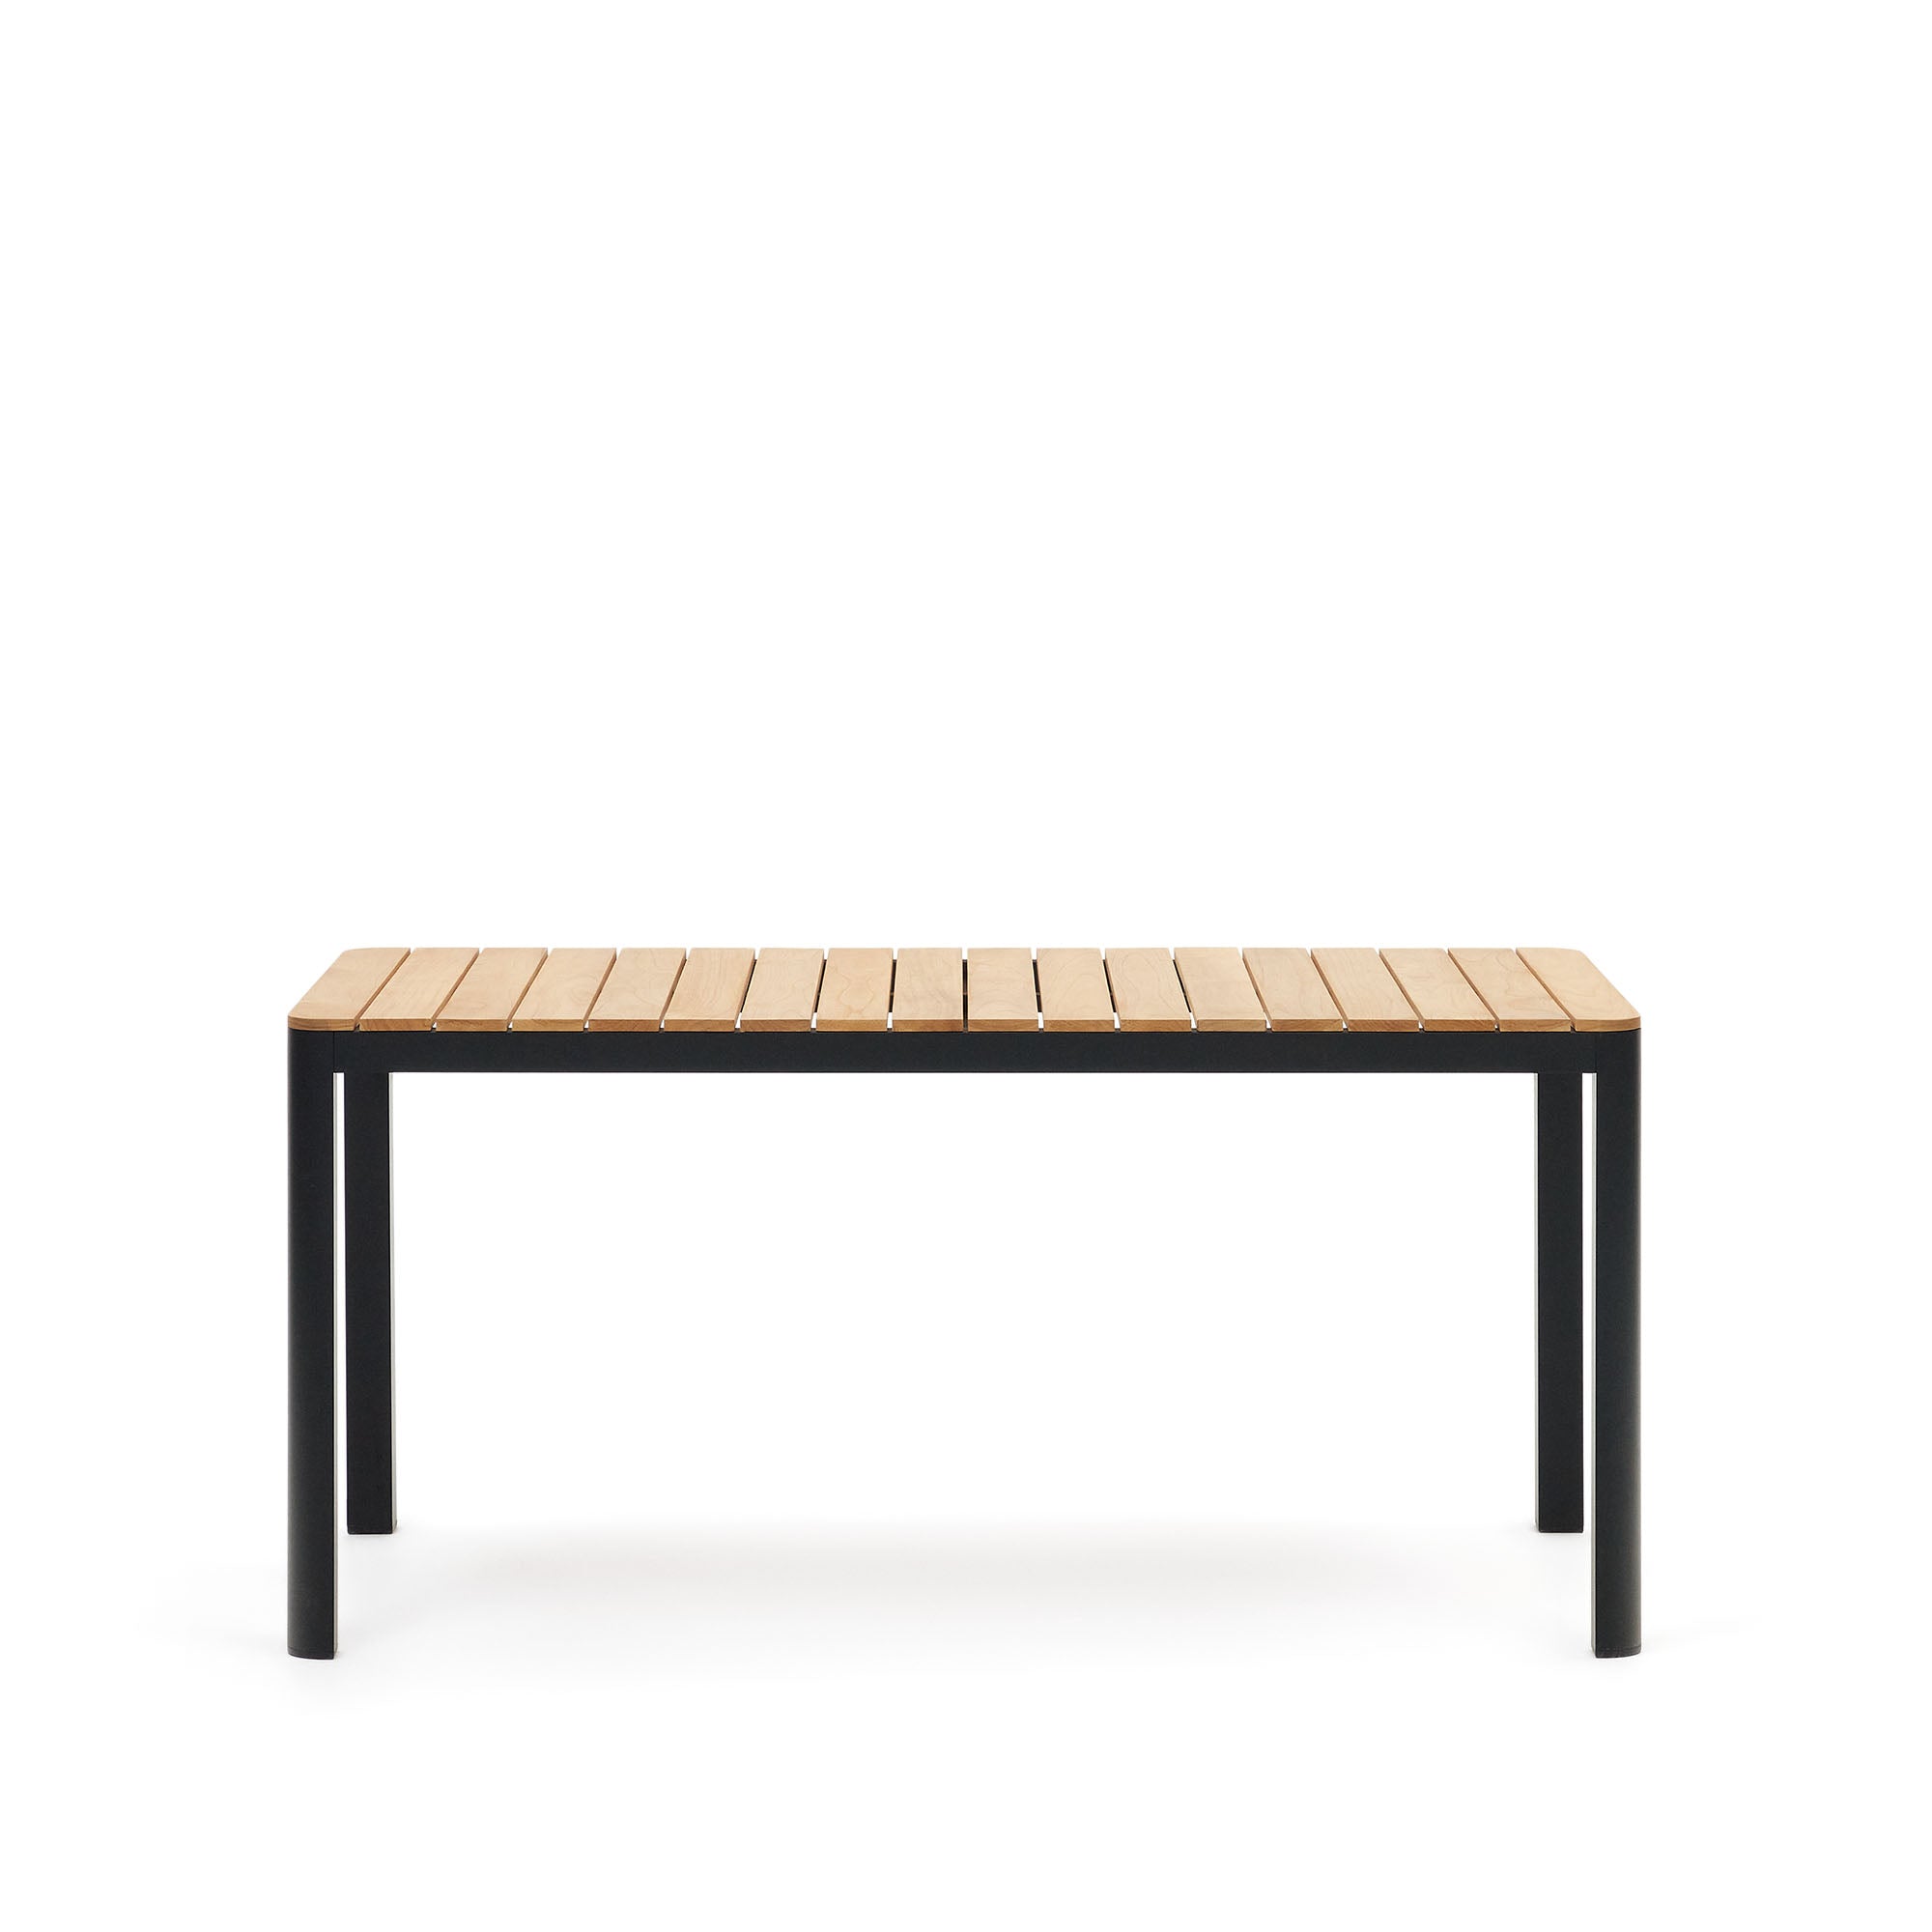 Bona alumínium és tömör teakfa asztal, 100%-ban kültéri használatra alkalmas, fekete kivitelben, 160 x 90 cm